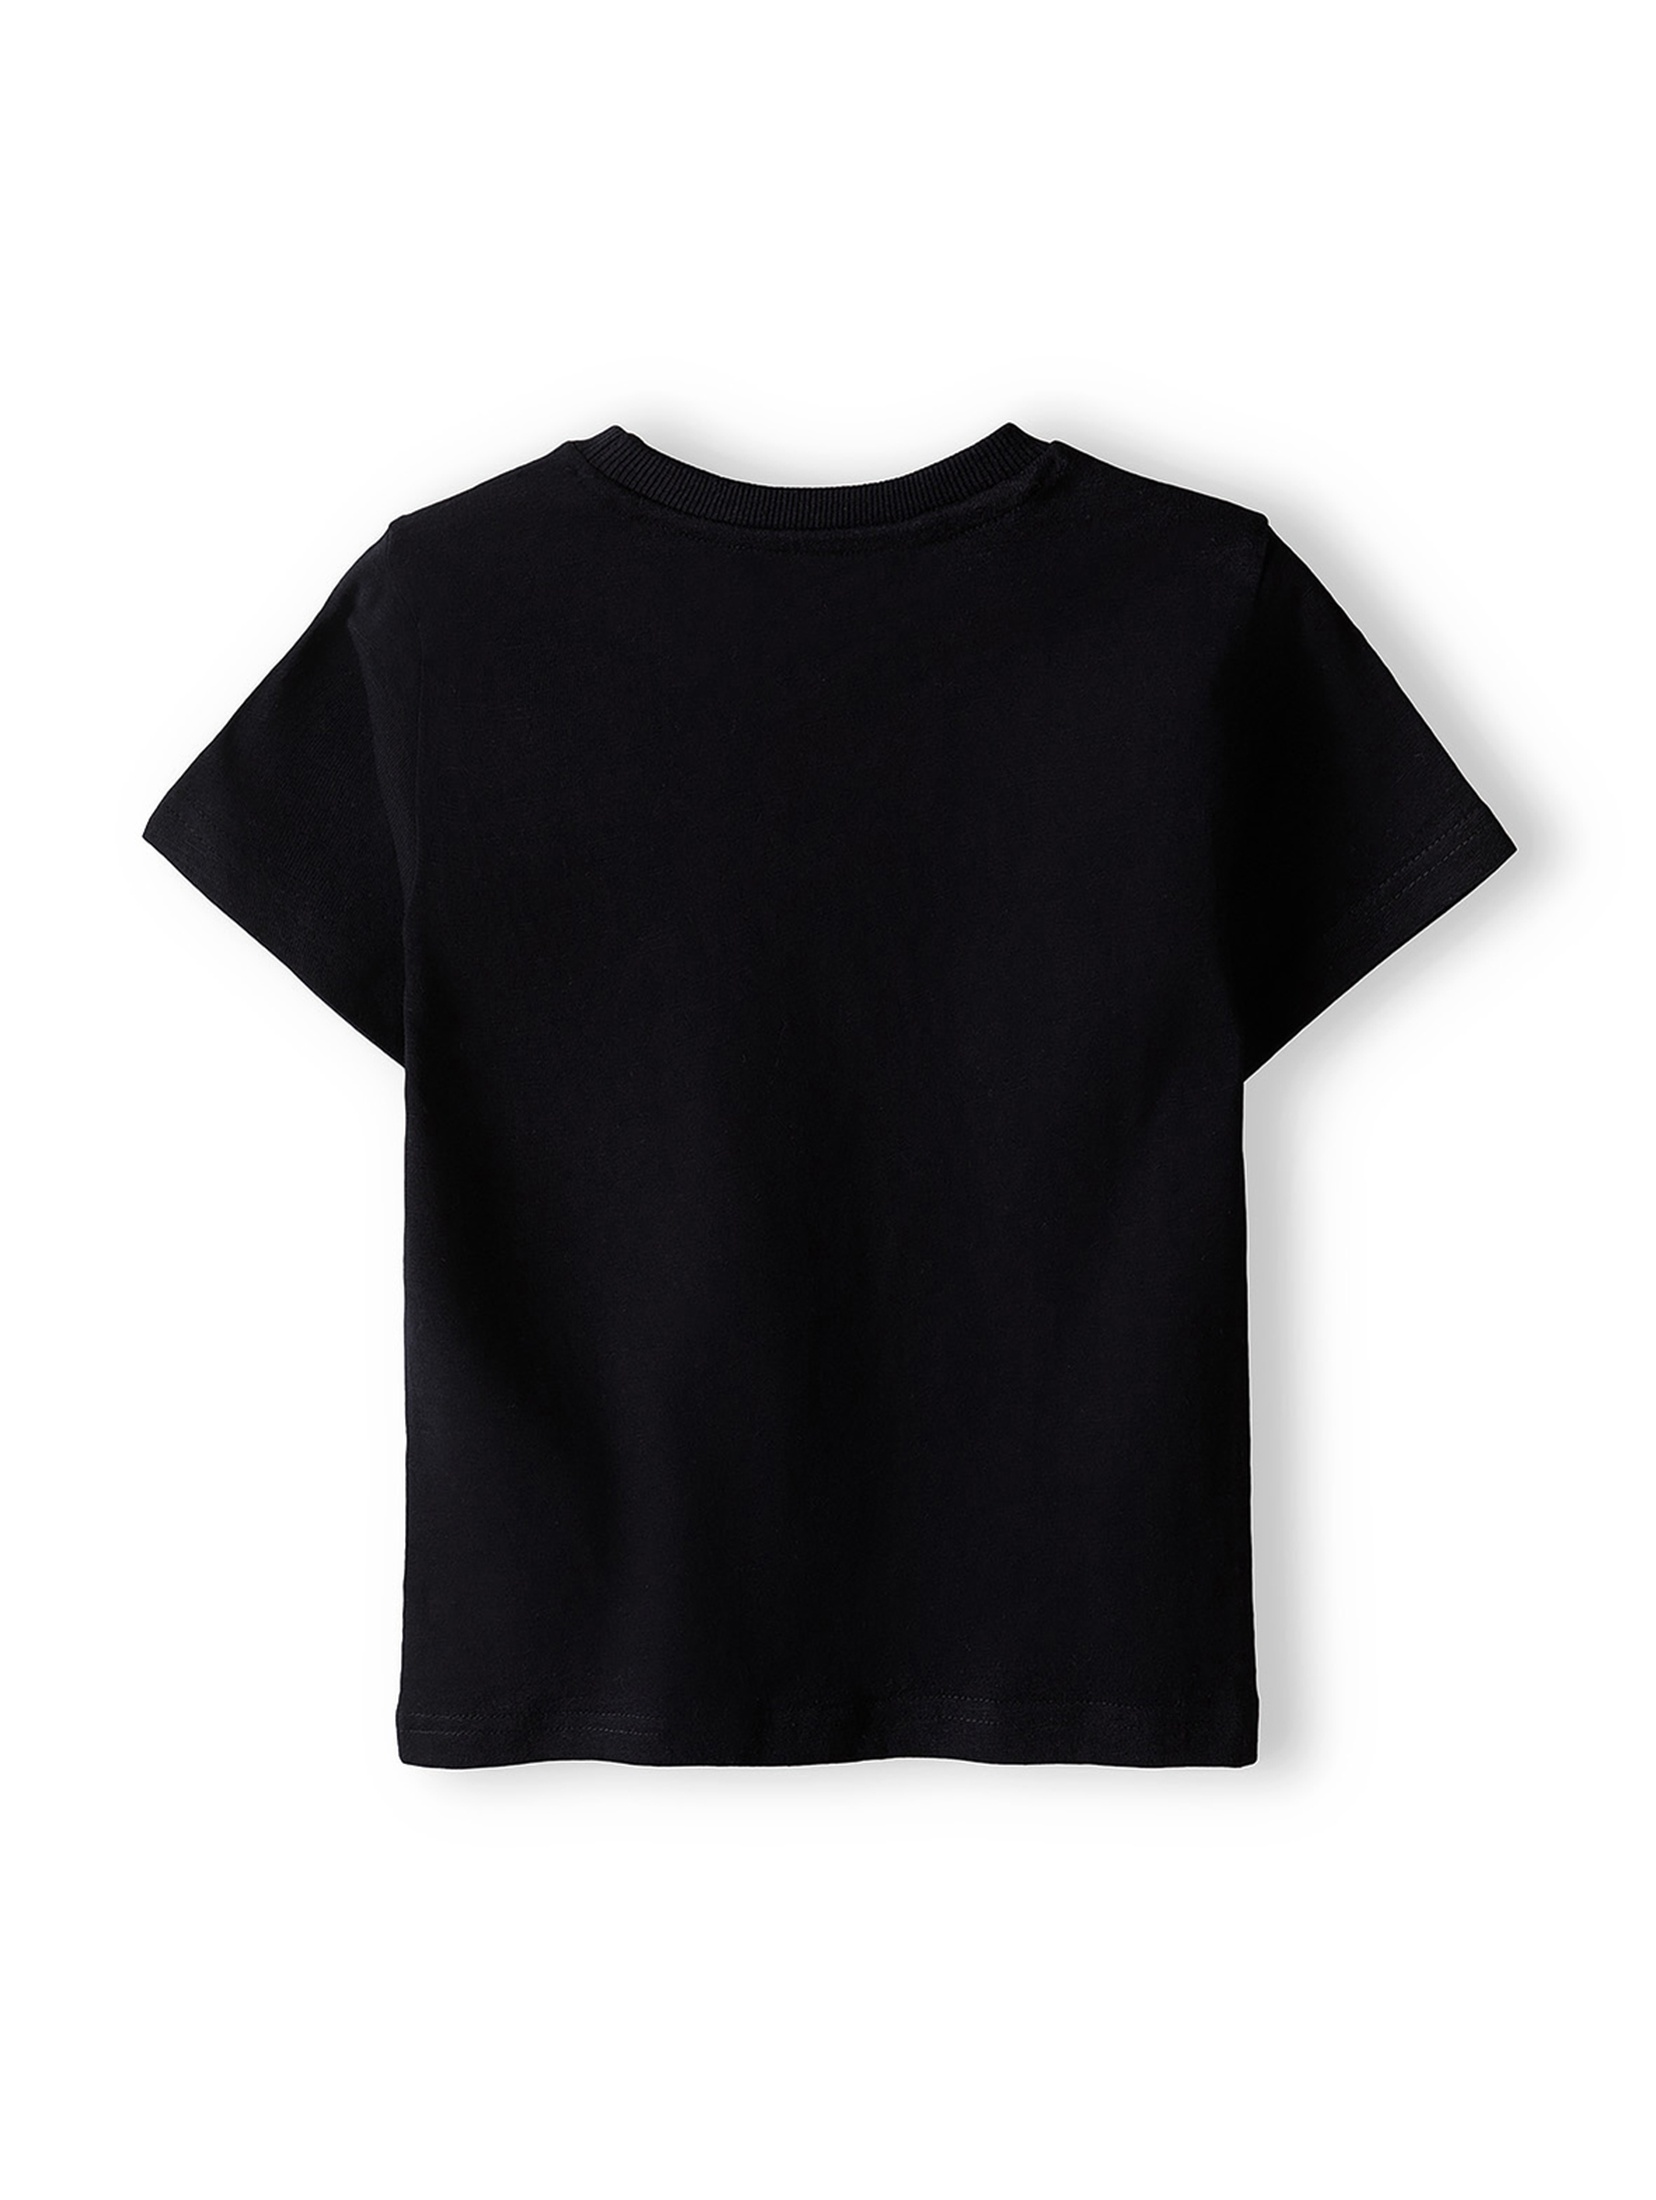 Czarna koszulka bawełniana dla niemowlaka